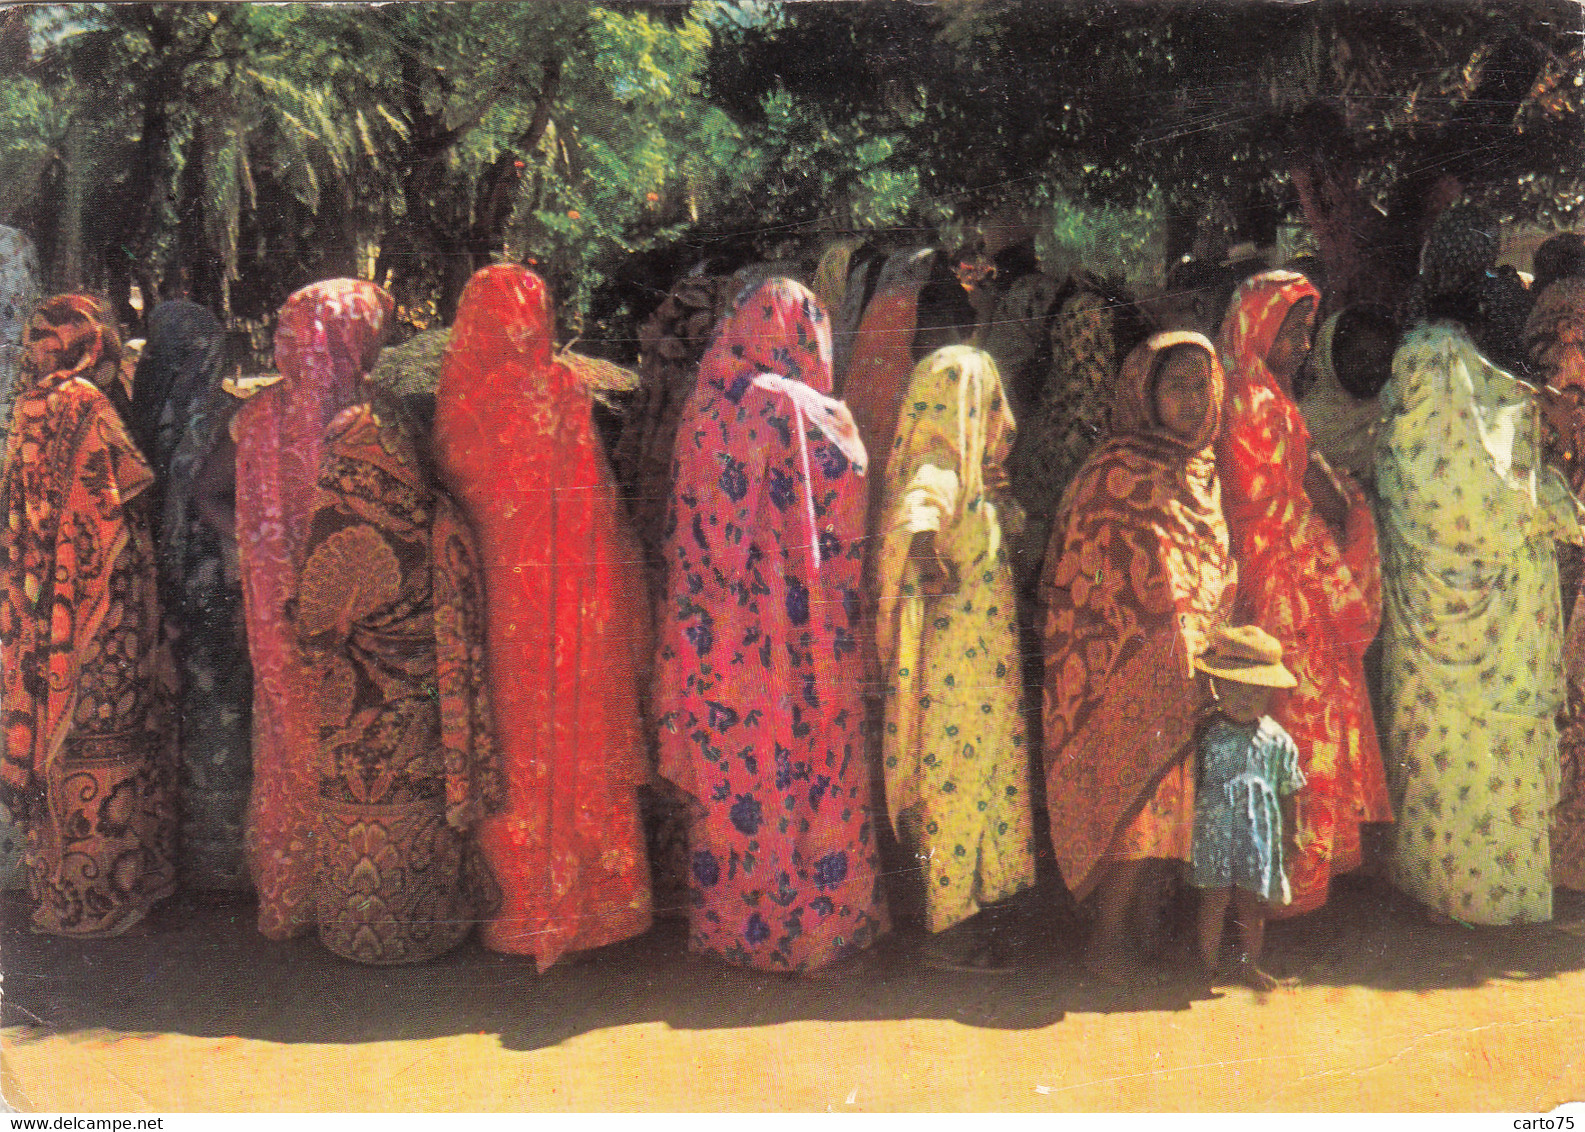 La Réunion - Femmes Sakalaves En  Lambas - Ethnie Madagascar - Santé Publicité - Saint Pierre